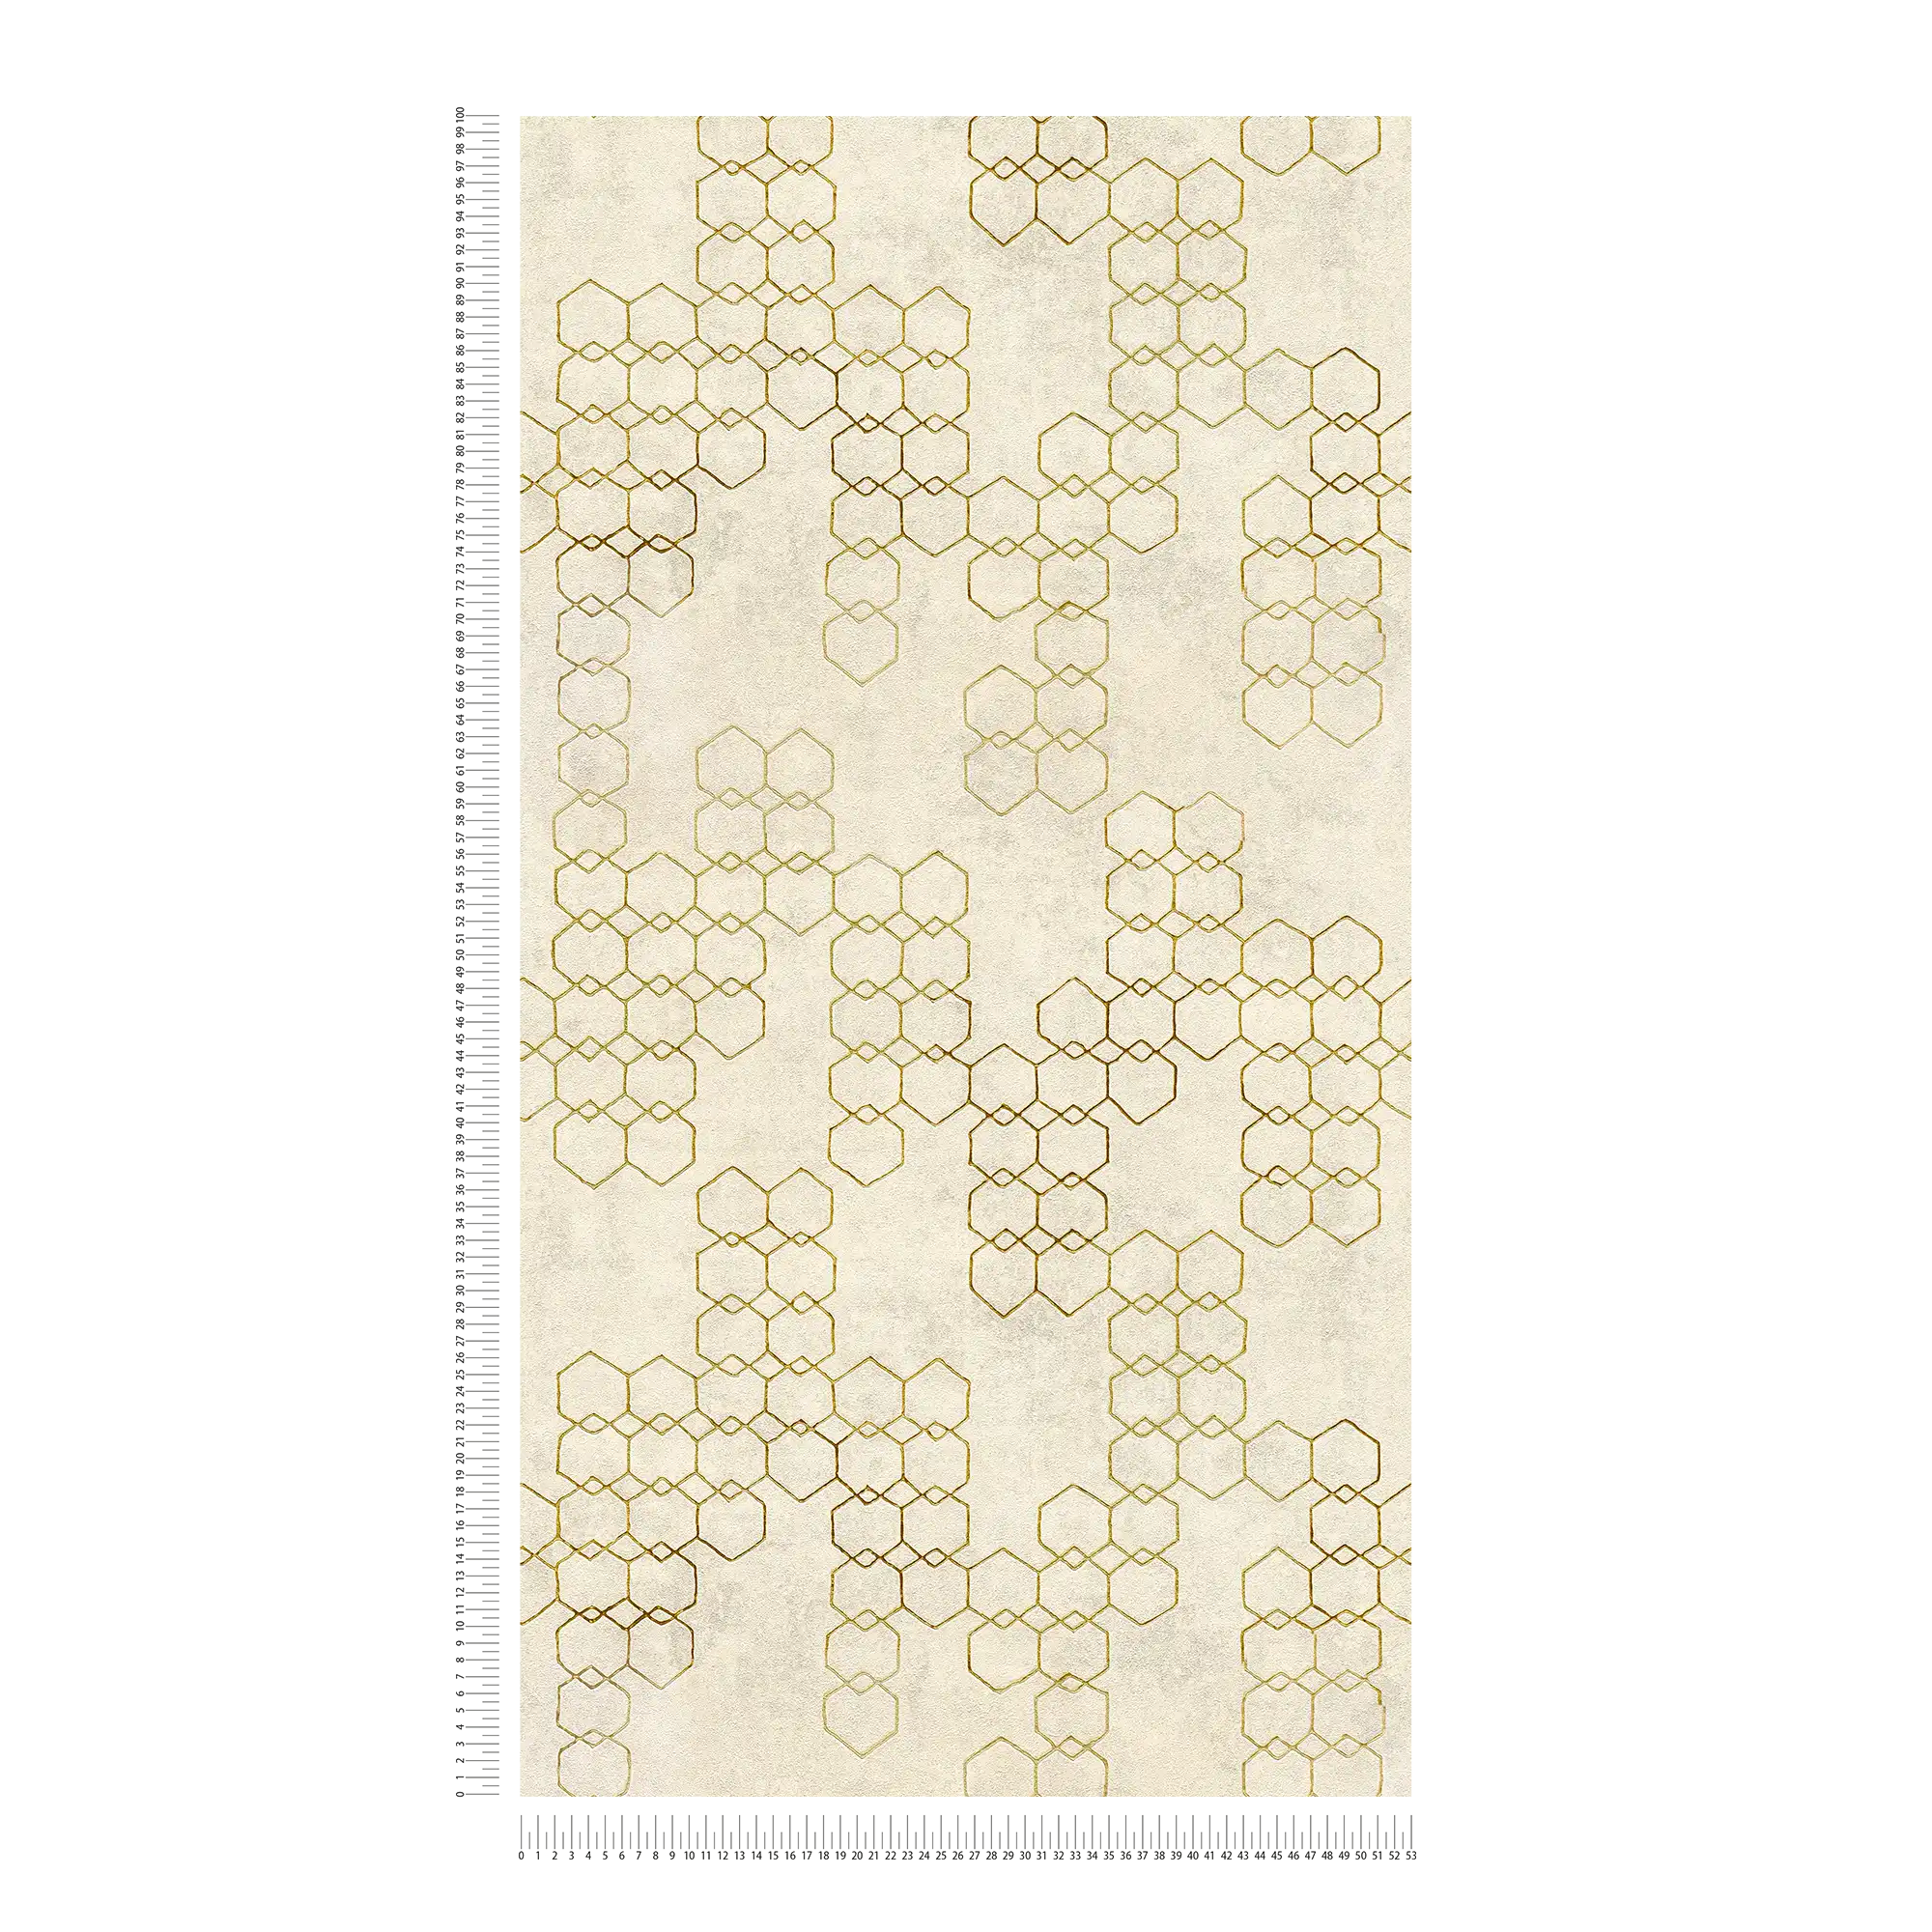             Papier peint à motifs géométriques de style industriel - crème, or, gris
        